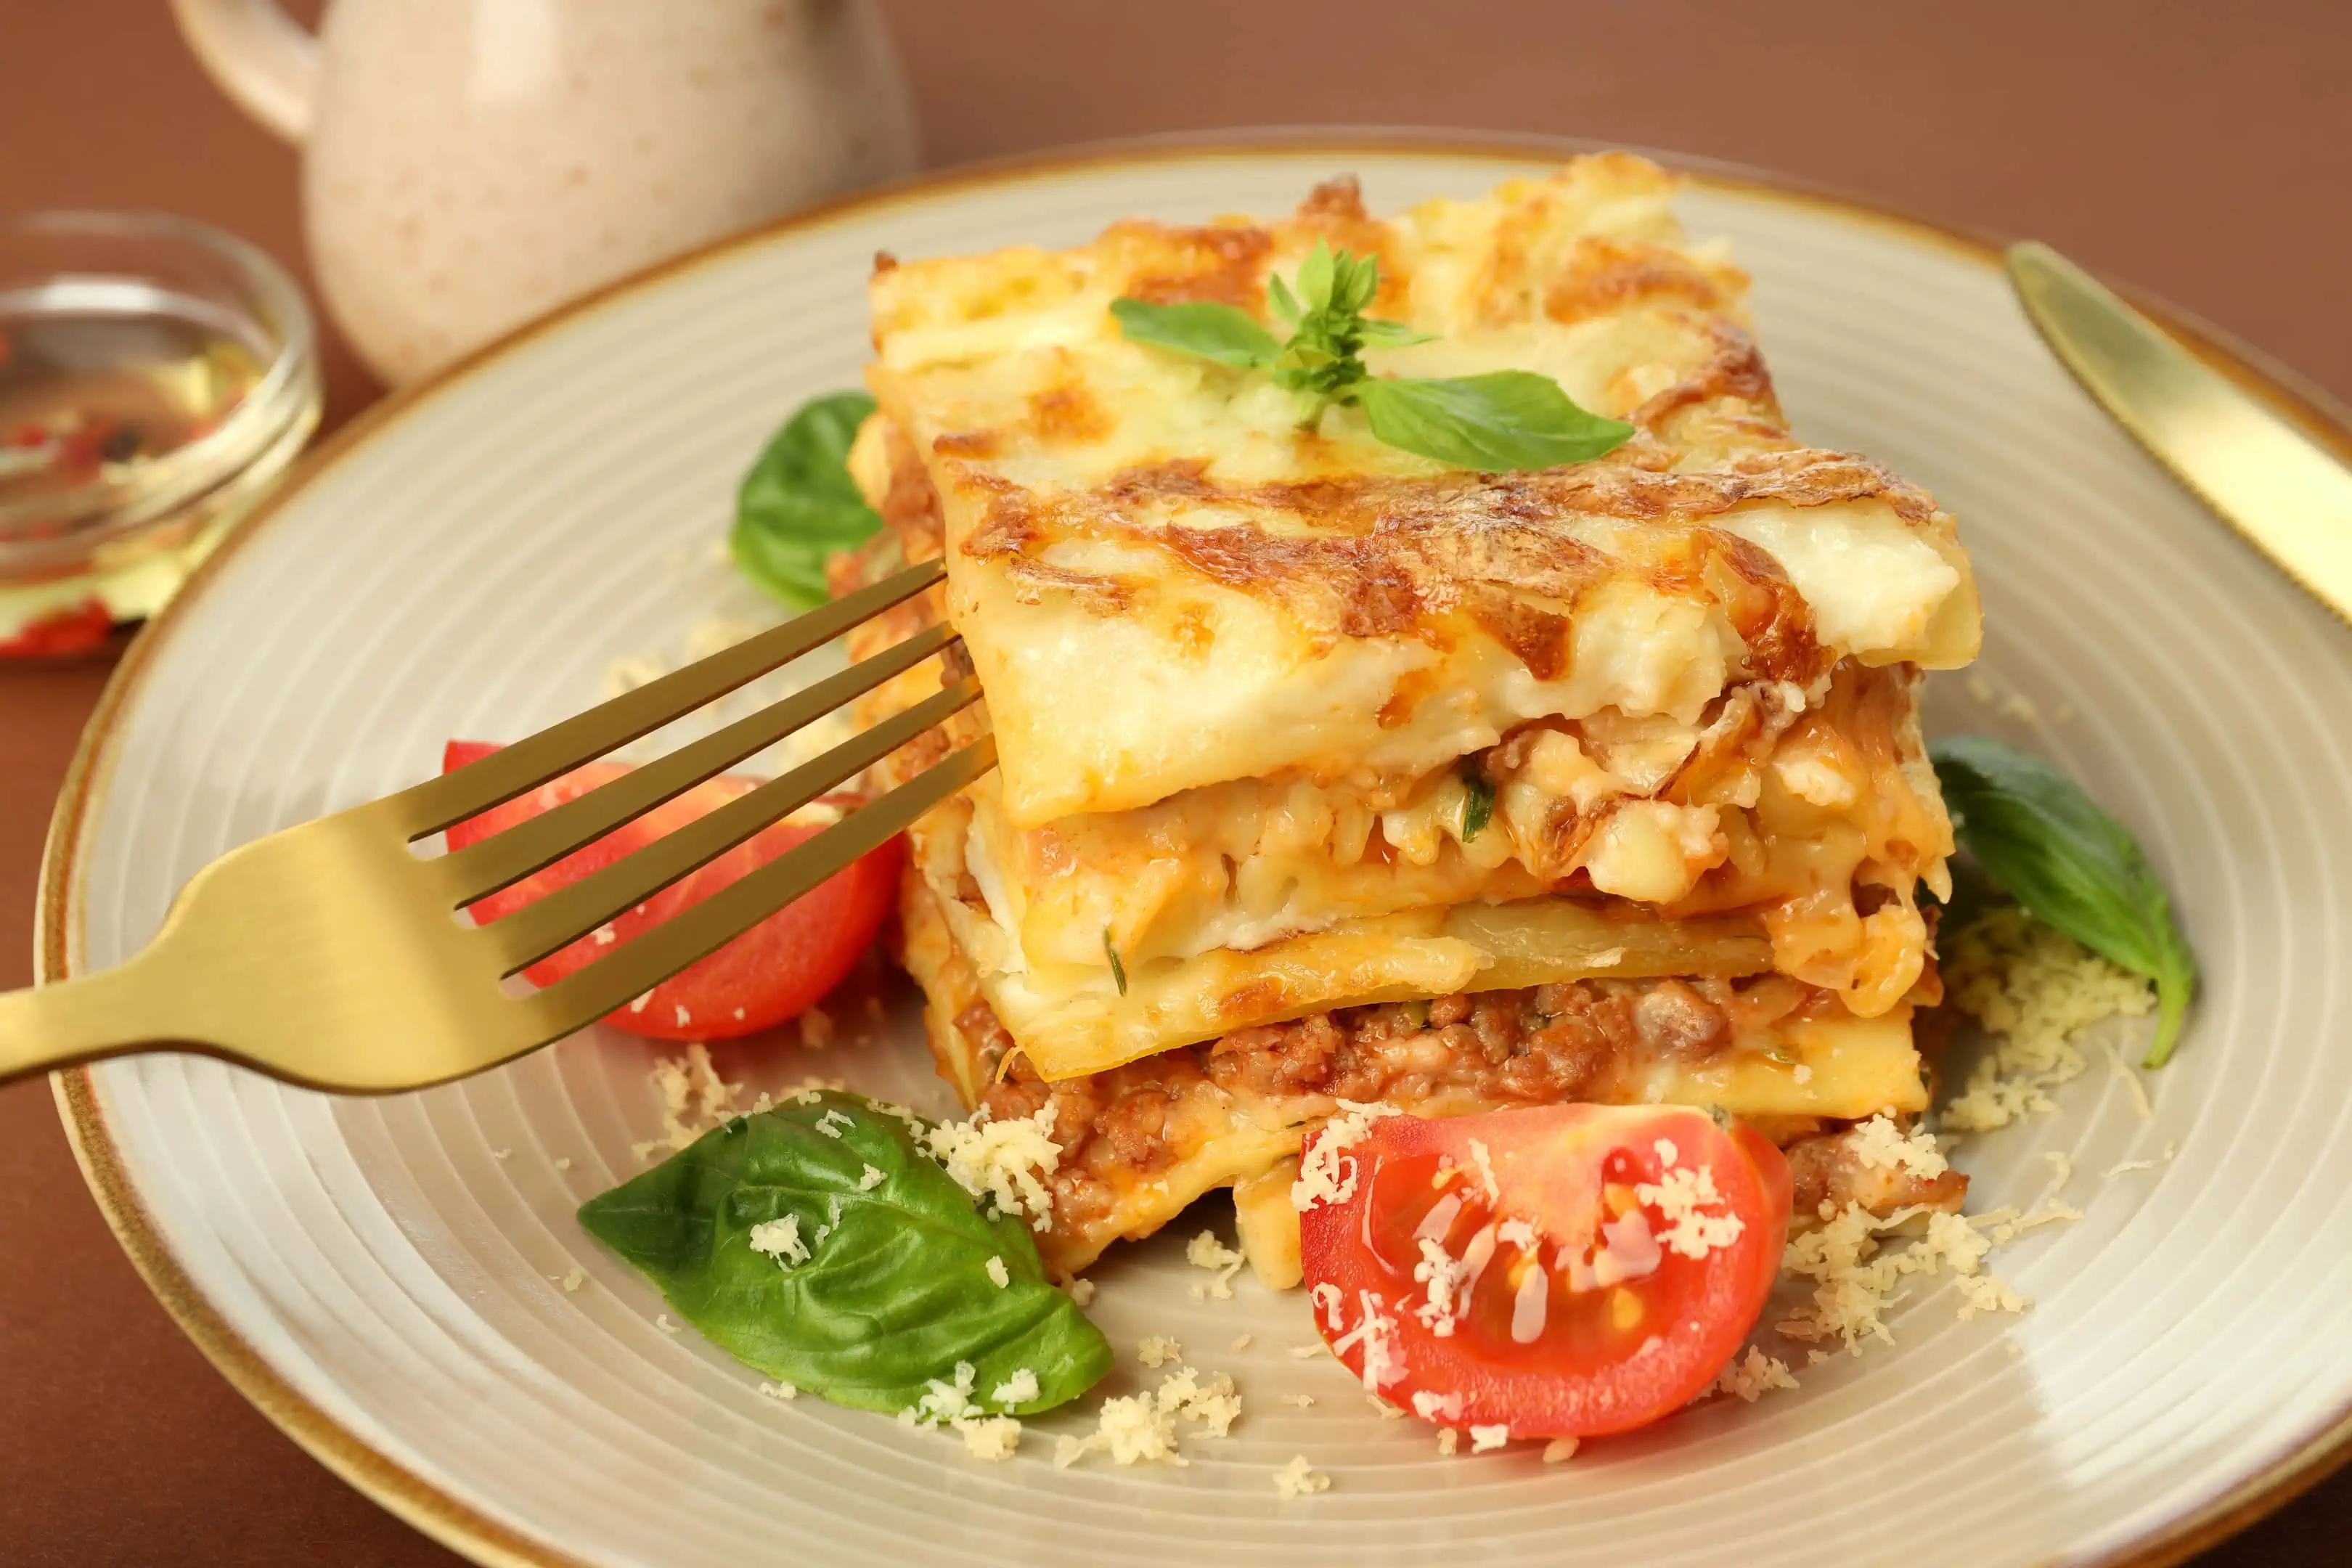 Delicious and creamy Muellers lasagna